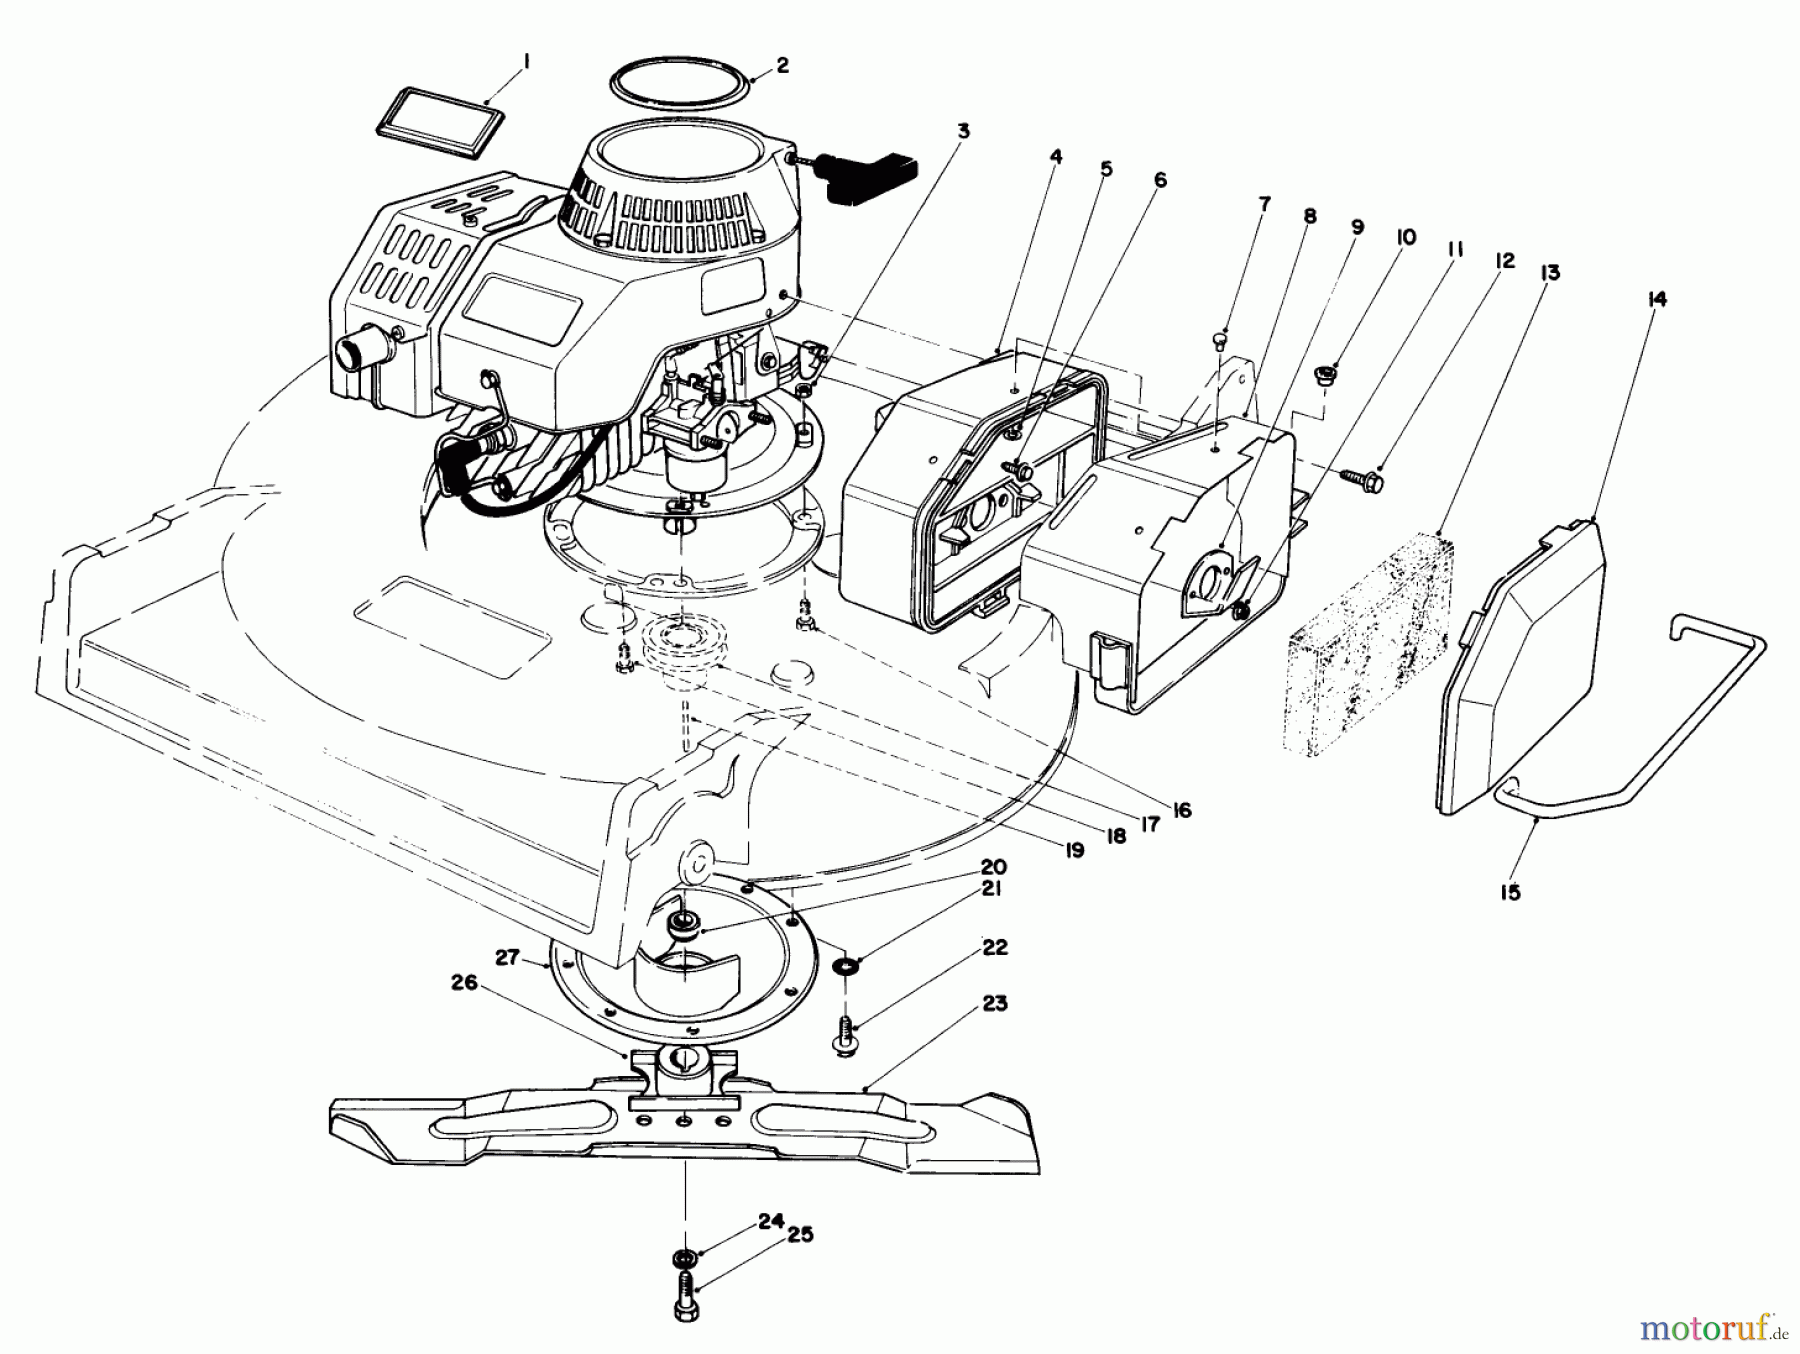  Toro Neu Mowers, Walk-Behind Seite 2 22035 - Toro Lawnmower, 1988 (8000001-8002989) ENGINE ASSEMBLY (MODEL 22035)